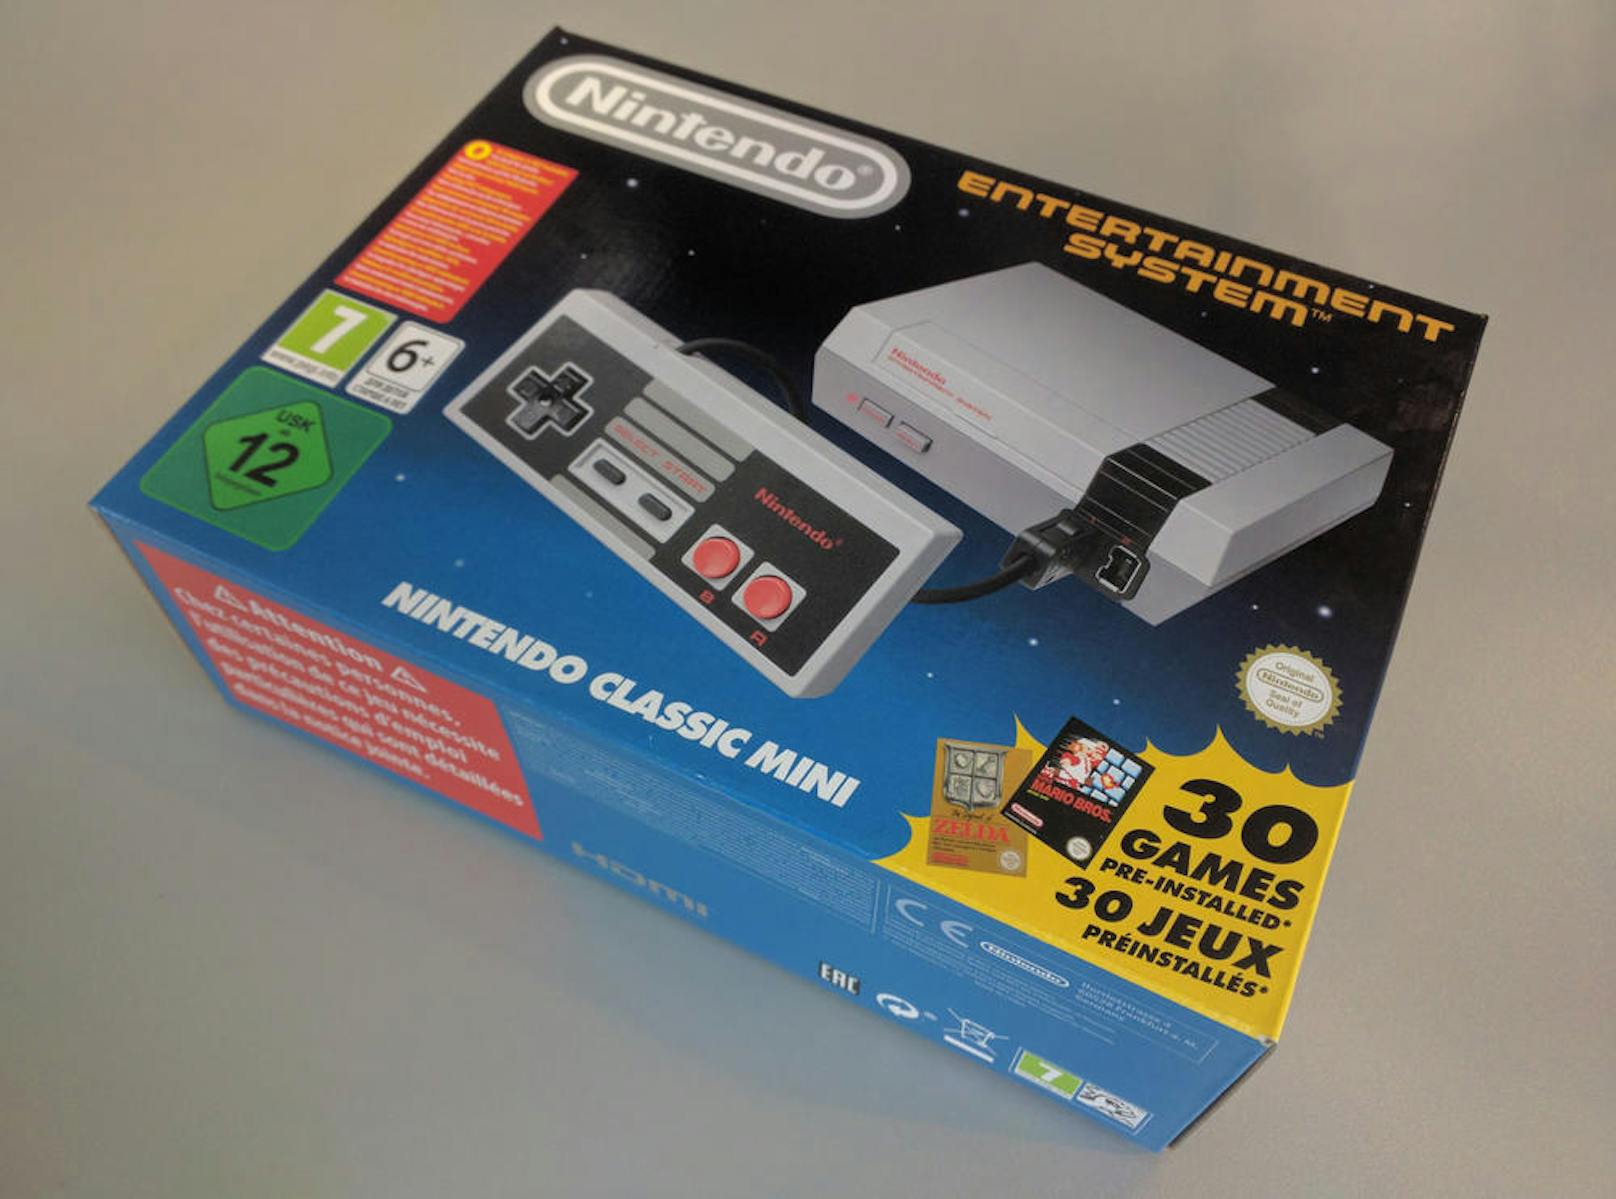 Auf der modernen Mini-Ausgabe von Nintendos erster TV-Konsole NES sind 30 der beliebtesten Spiele ihrer Zeit fest installiert.